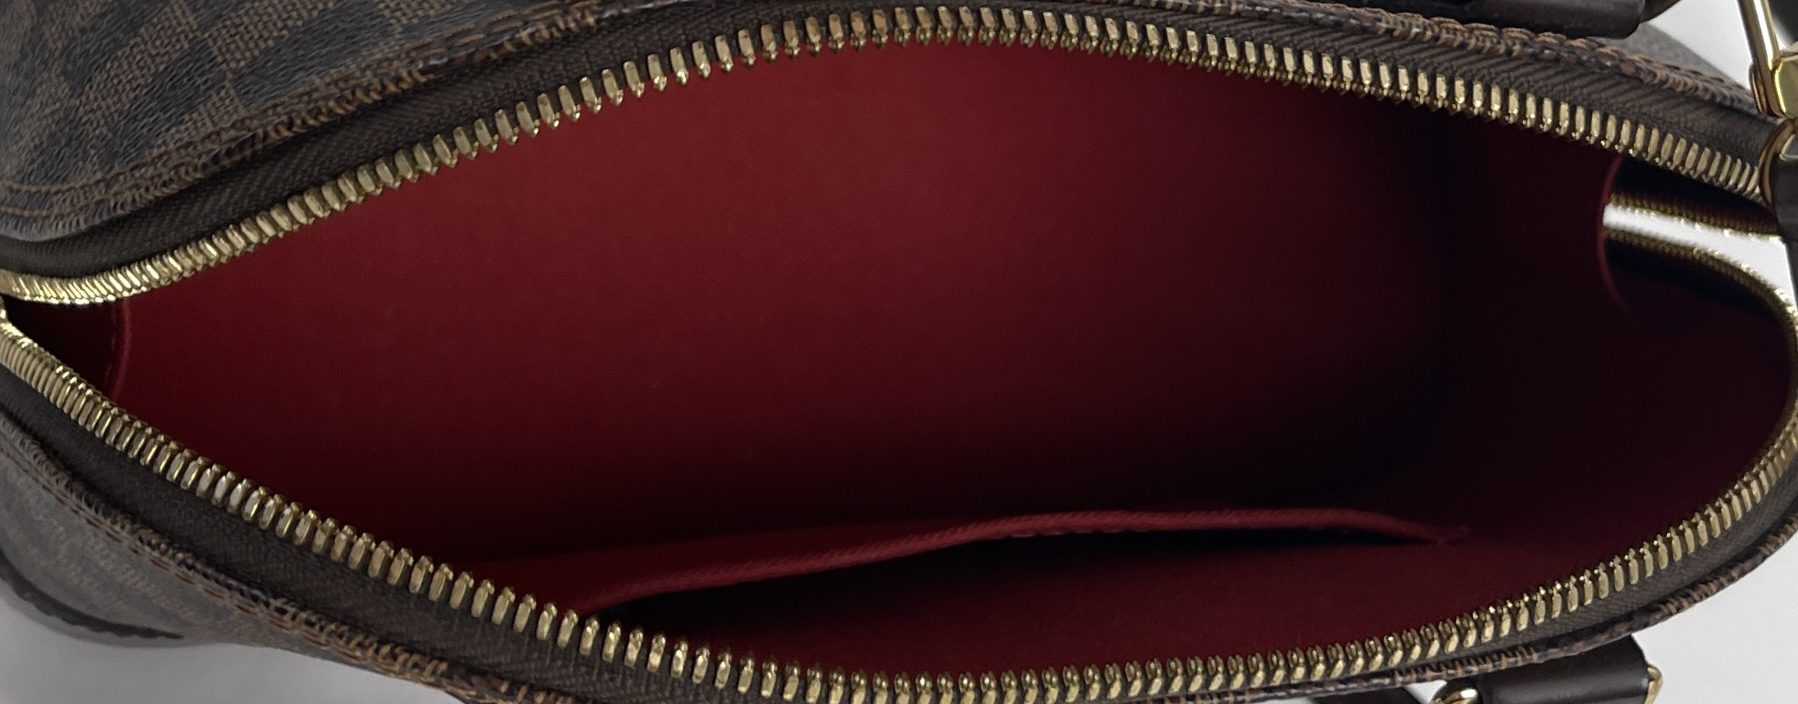 Louis Vuitton Brea MM / 3 Yr Wear & Tear + What's in my bag + OOTD